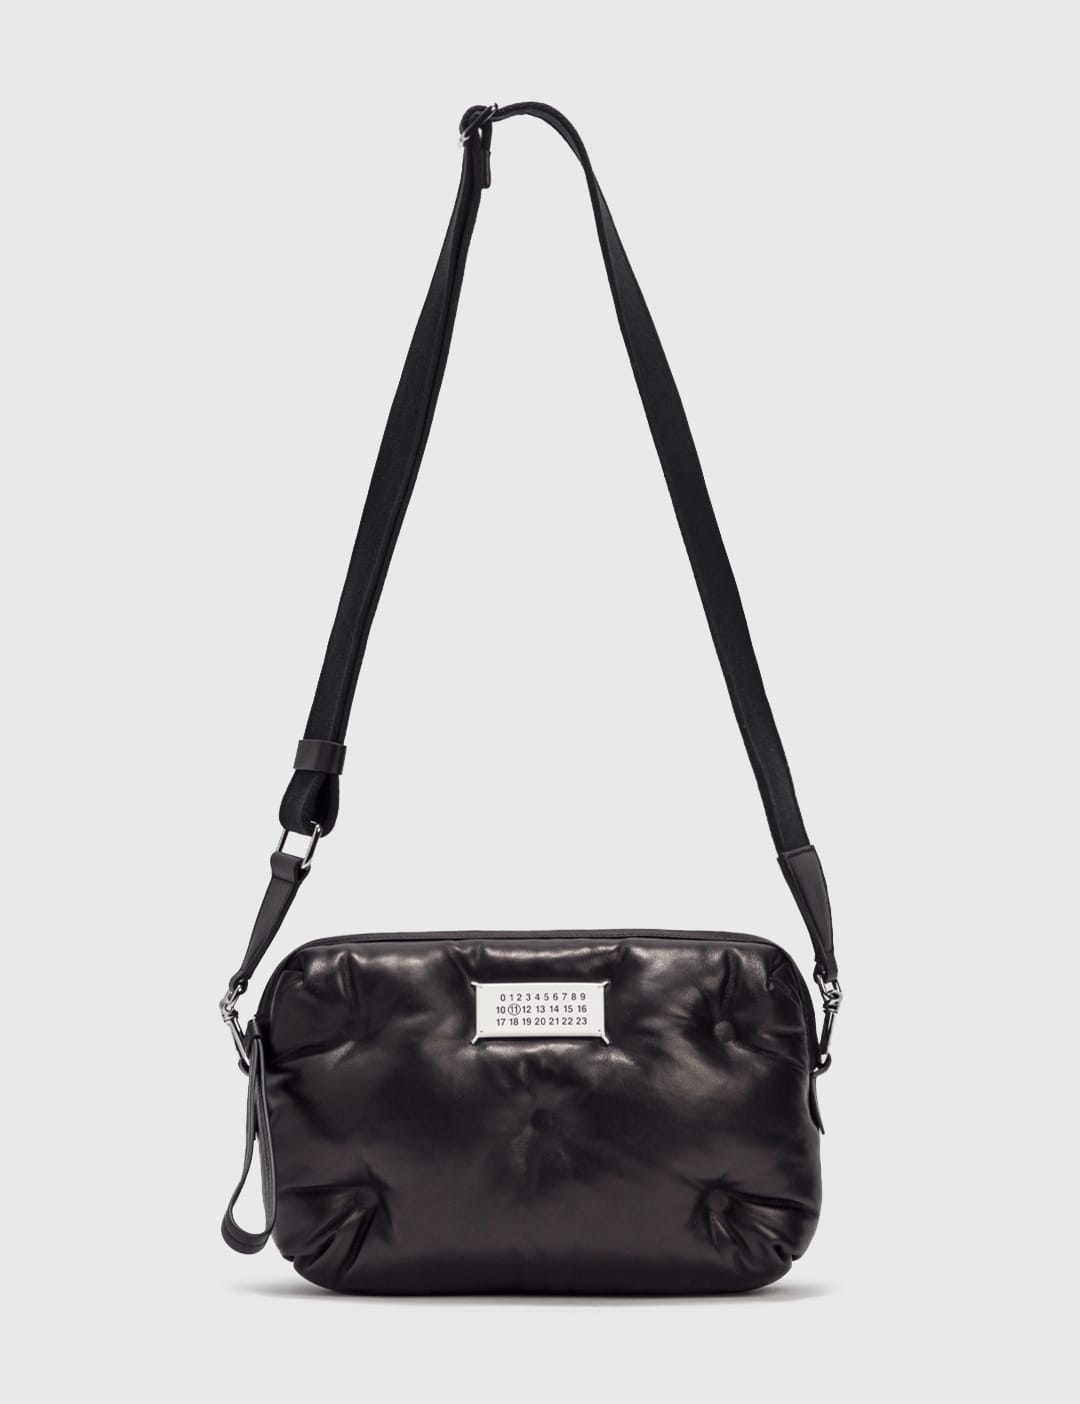 Maison Margiela - Glam Slam Crossbody Bag | HBX - Globally Curated 